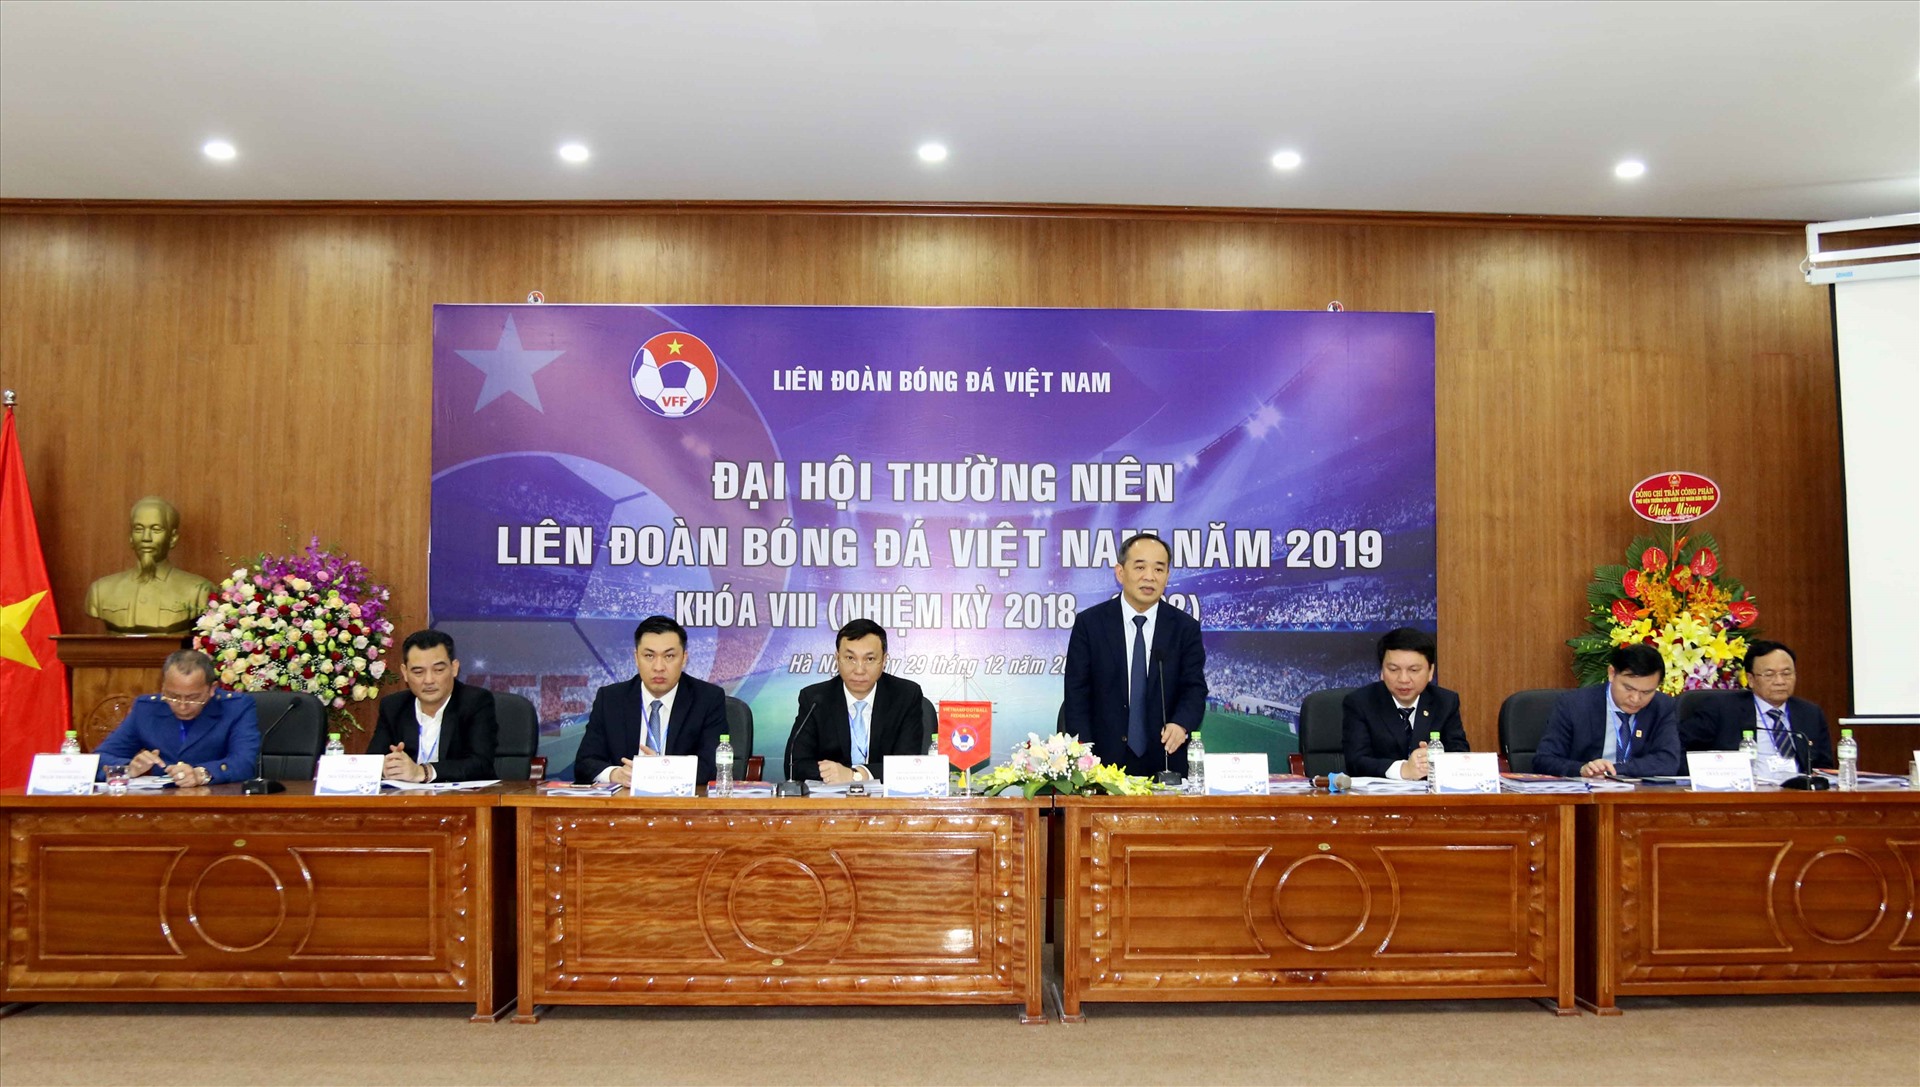 Ban chấp hành VFF sẽ có những giải pháp cụ thể cho bóng đá Việt Nam. Ảnh: VFF